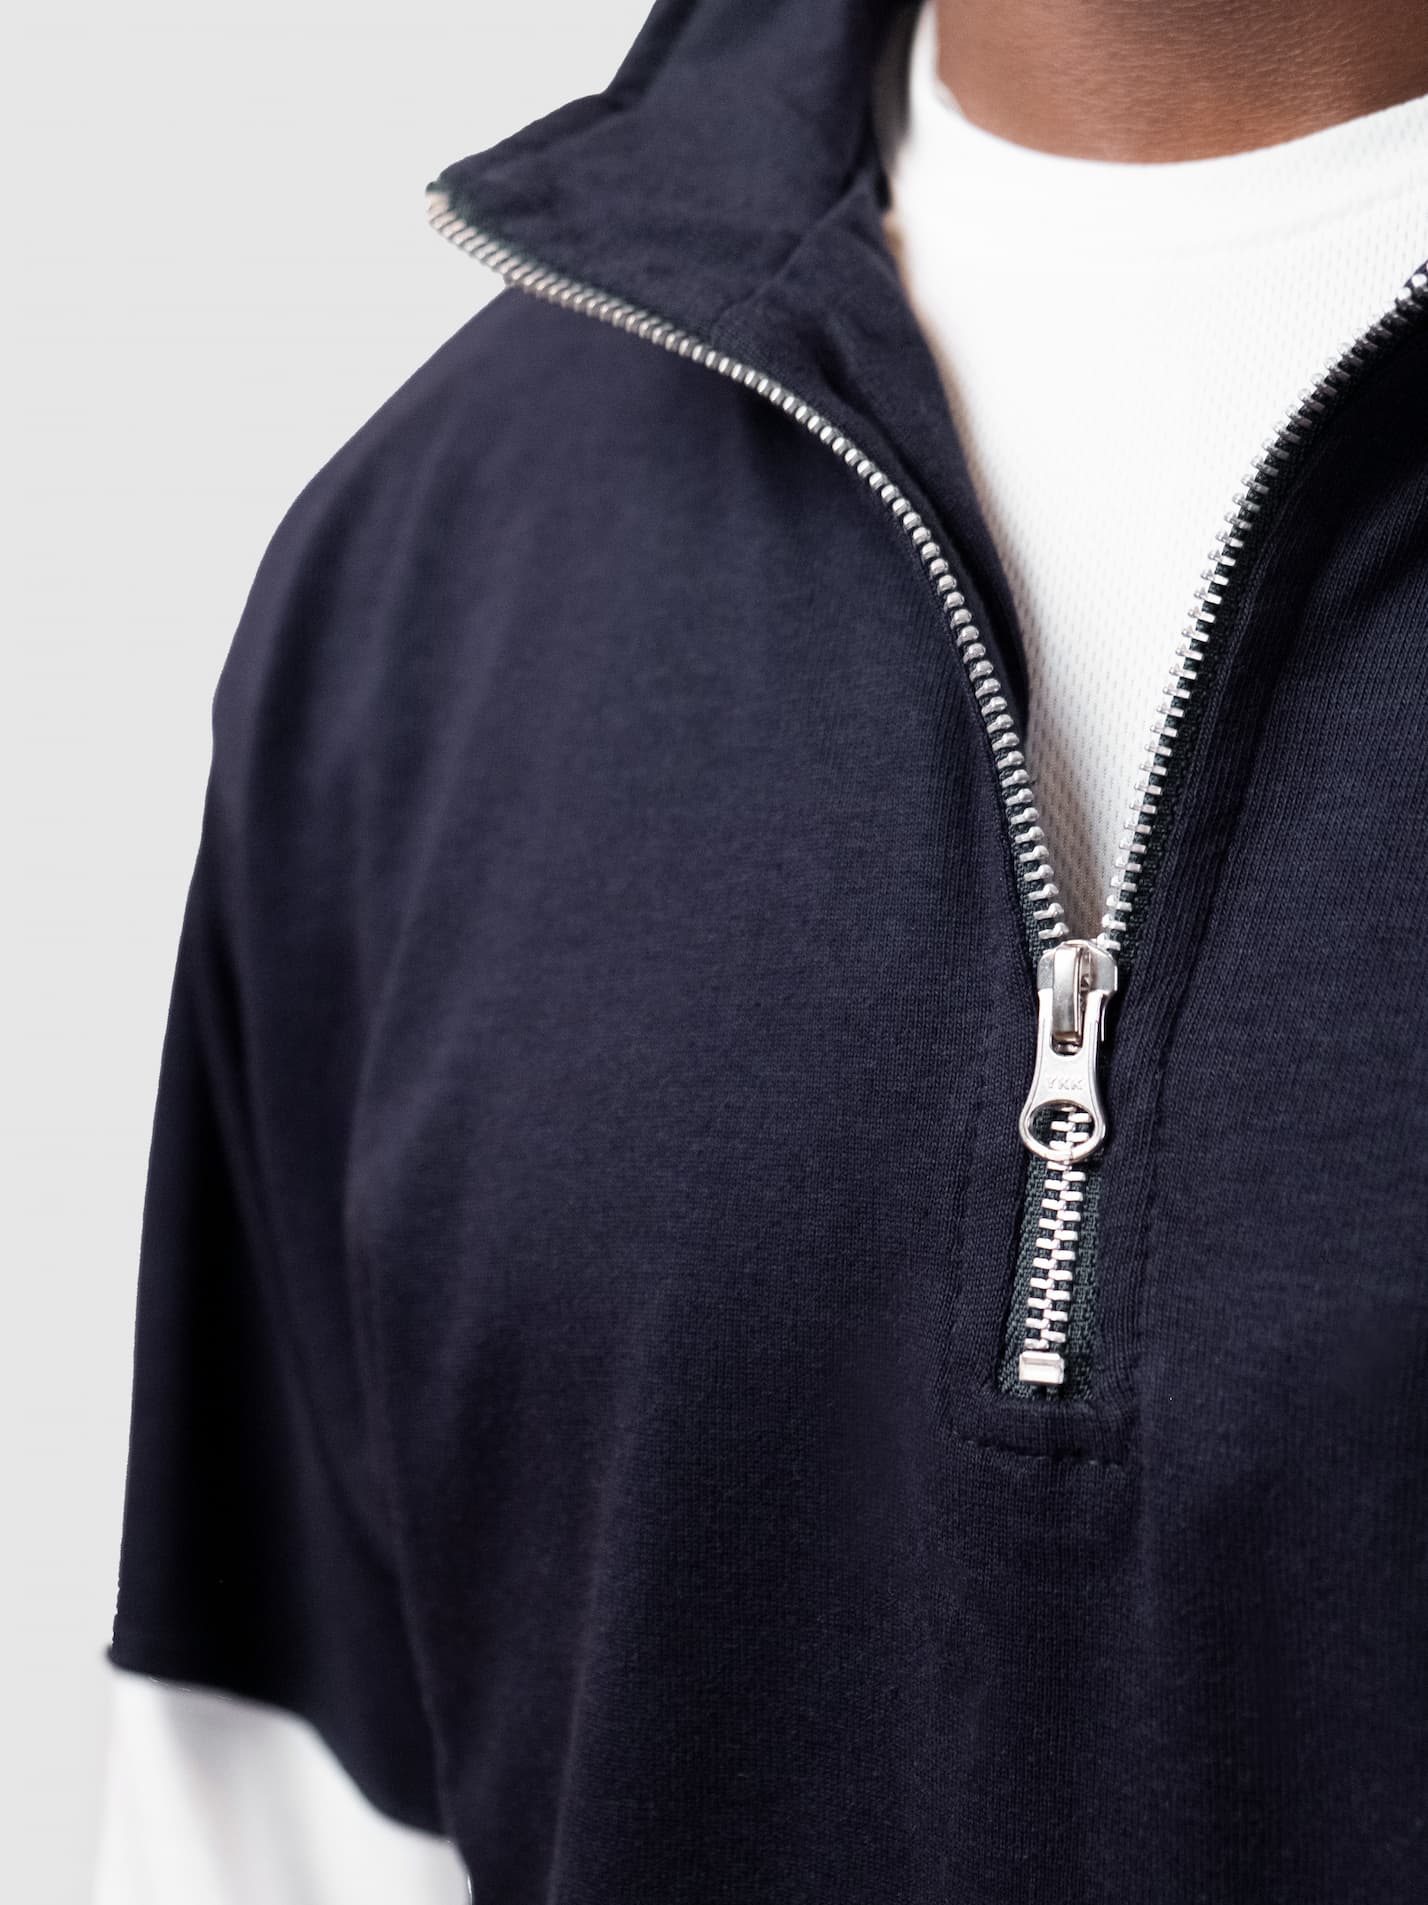 Girton College Cambridge Unisex Panelled 1/4 Zip Sweatshirt